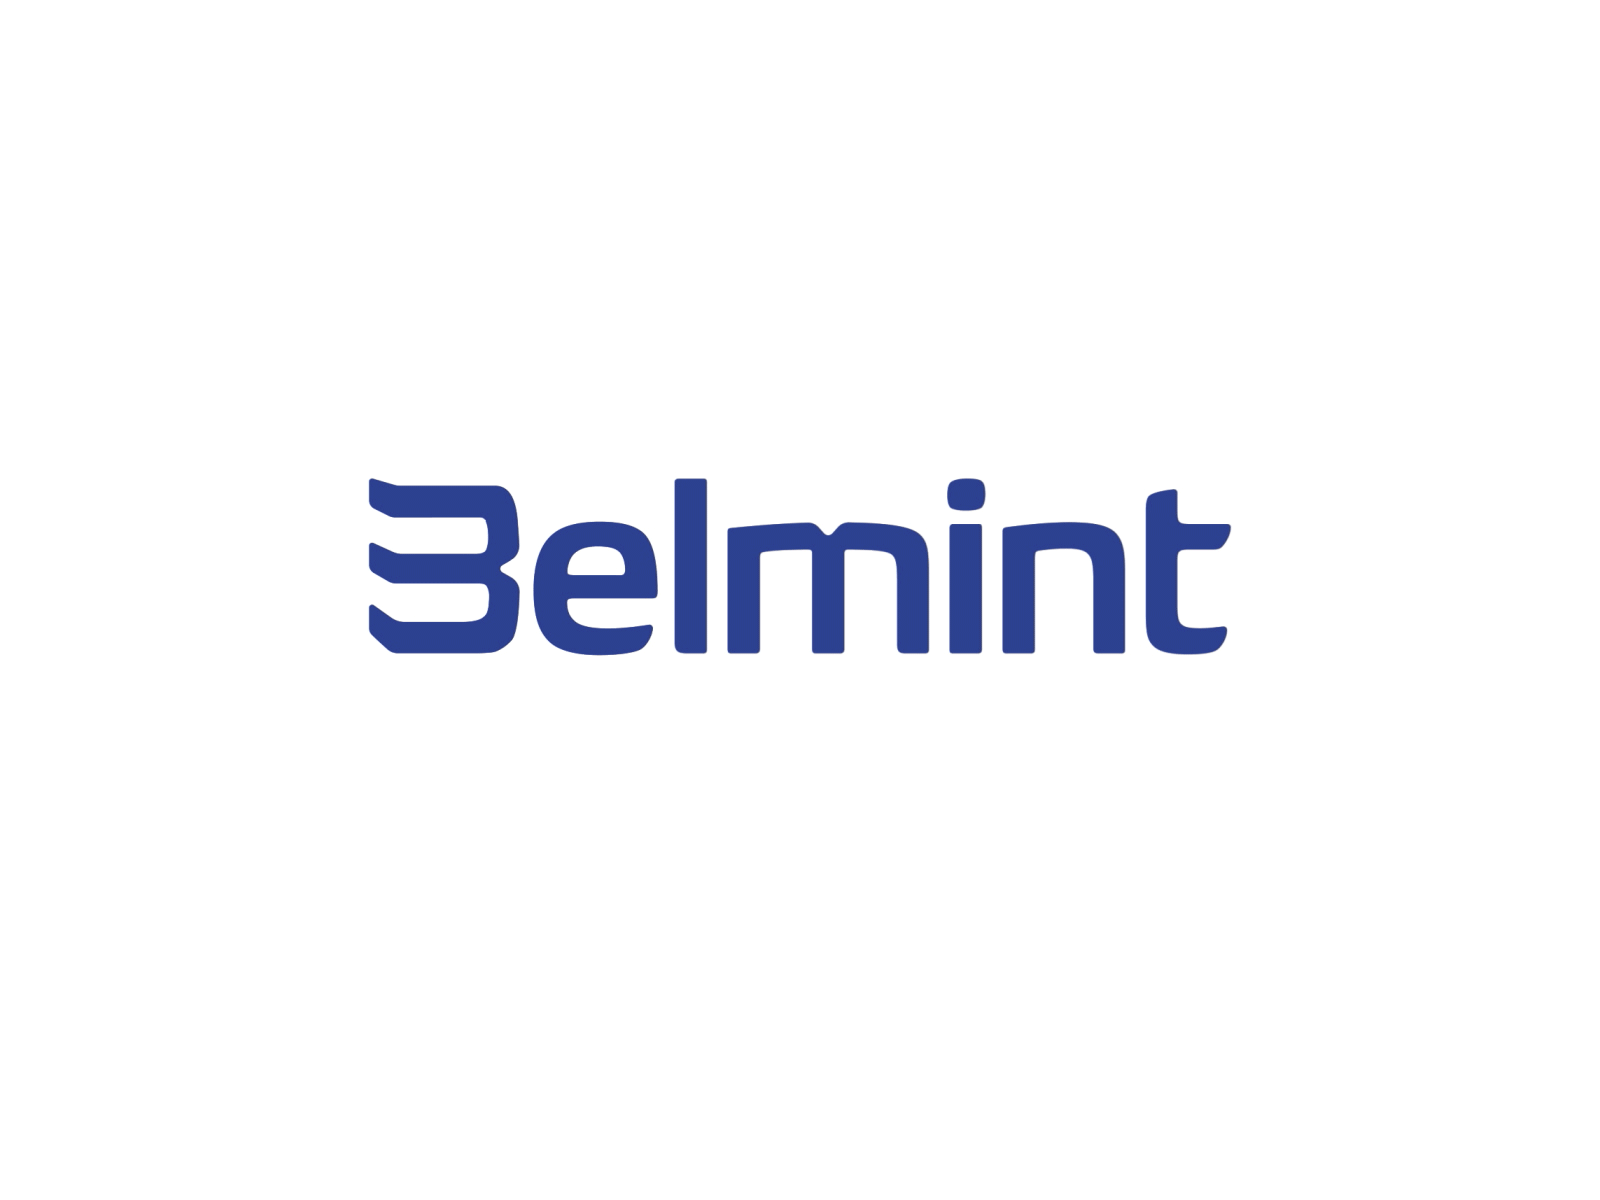 Belmint logo animation 2d animation animated writing logo logo animation